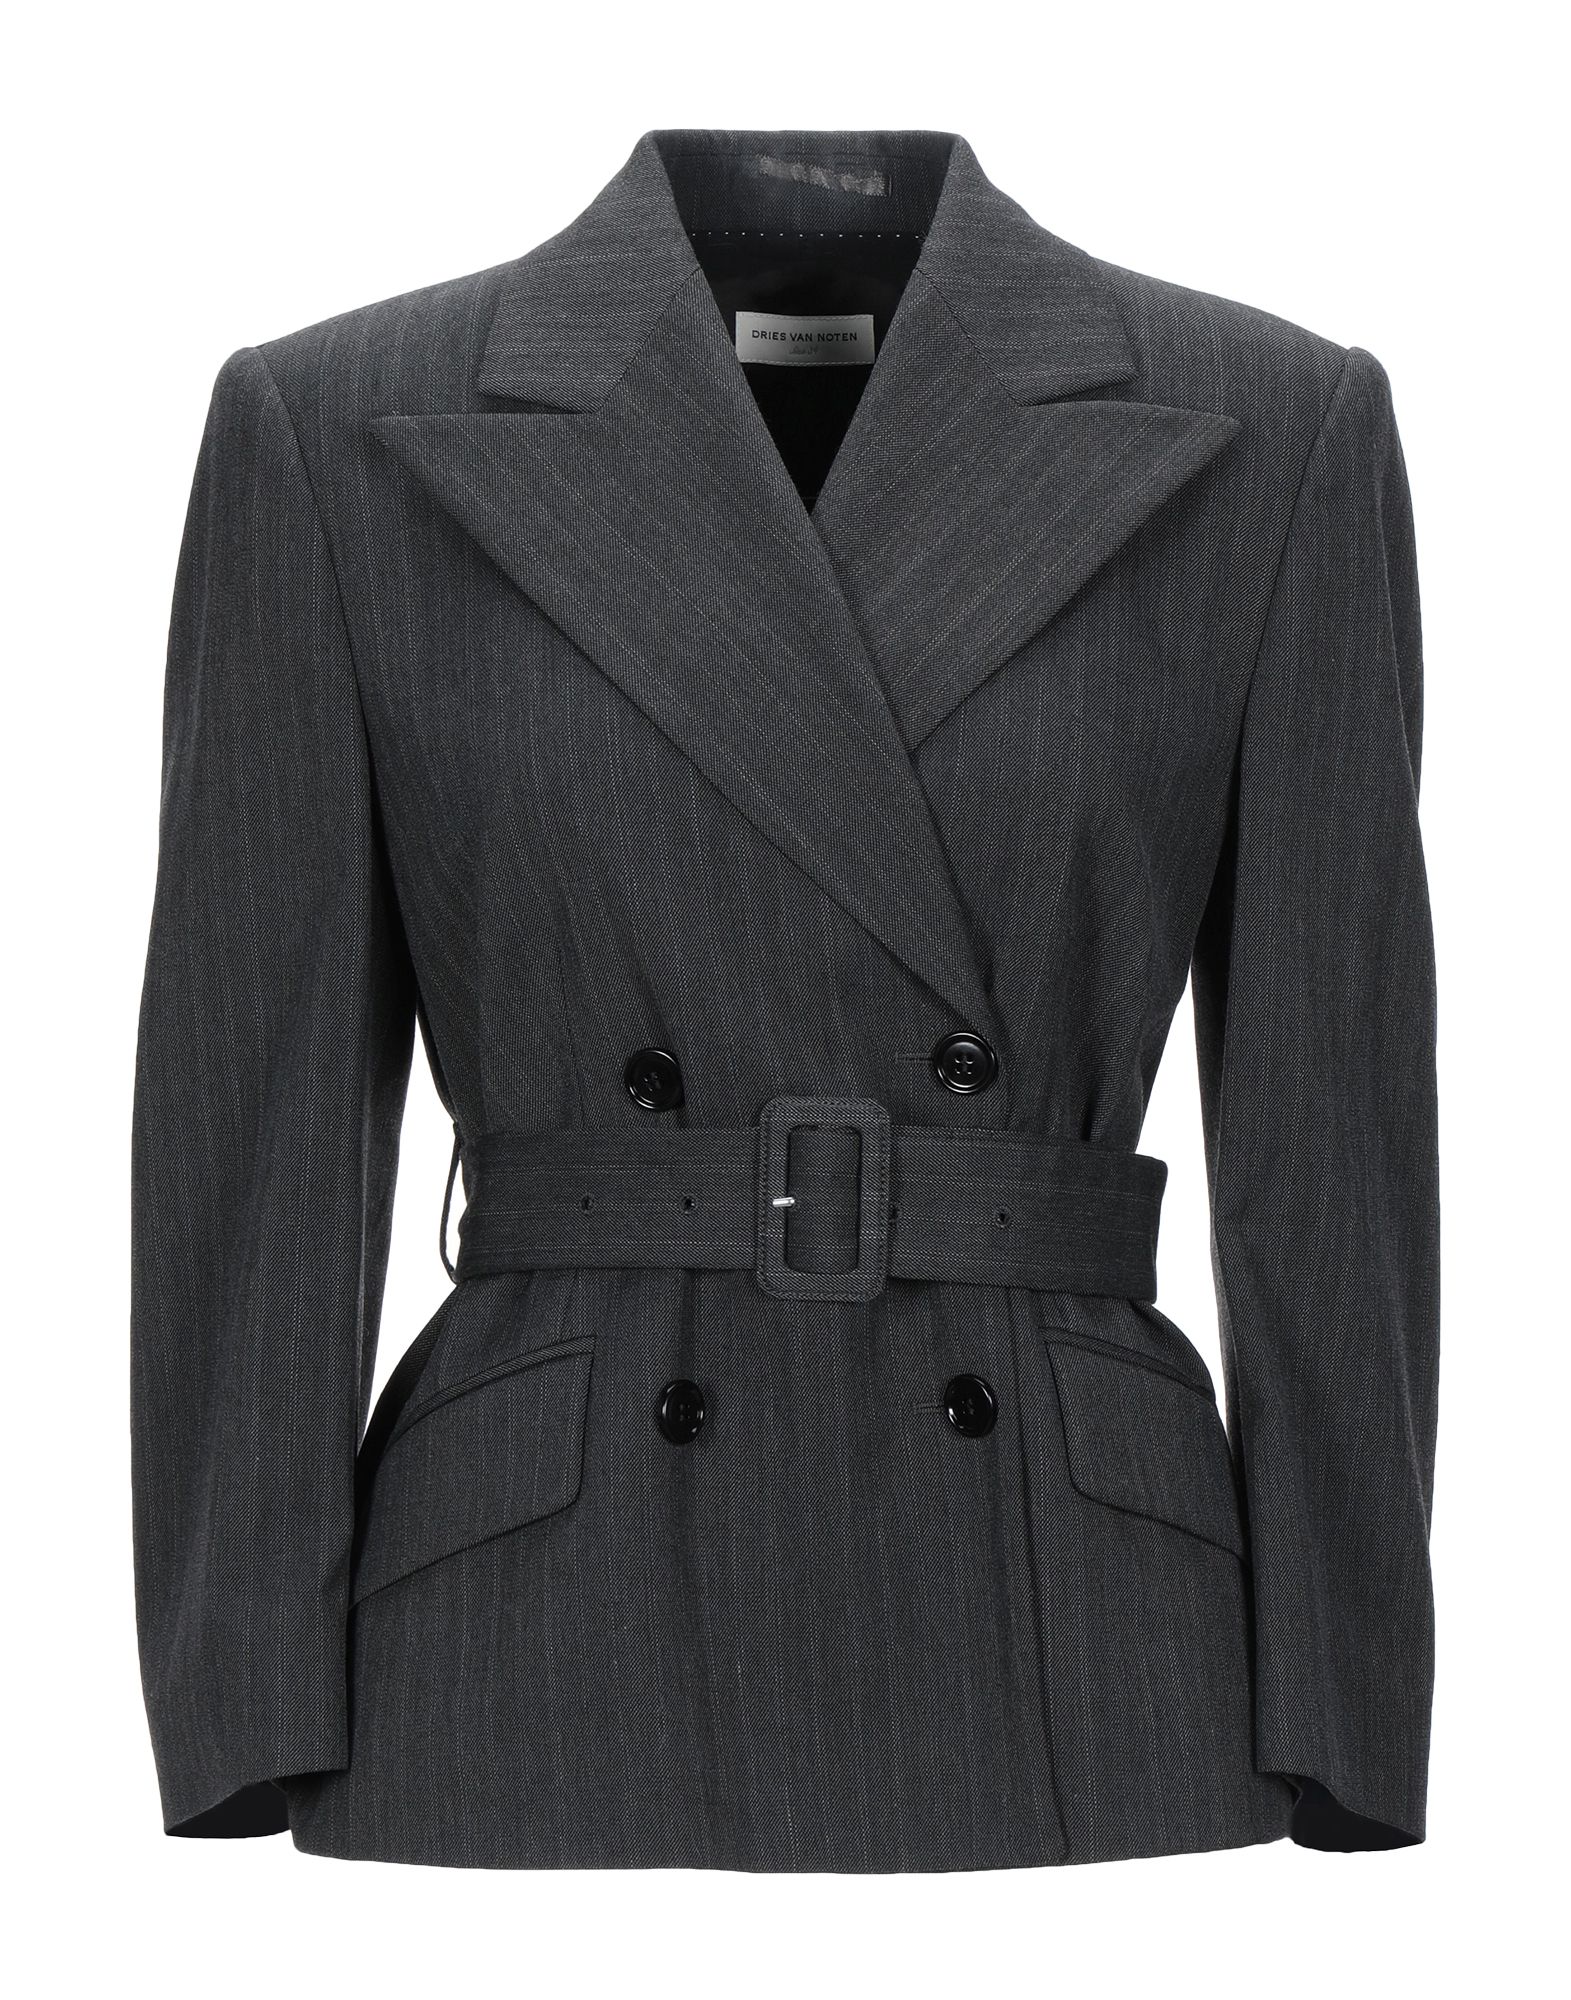 DRIES VAN NOTEN Suit jackets - Item 49575771